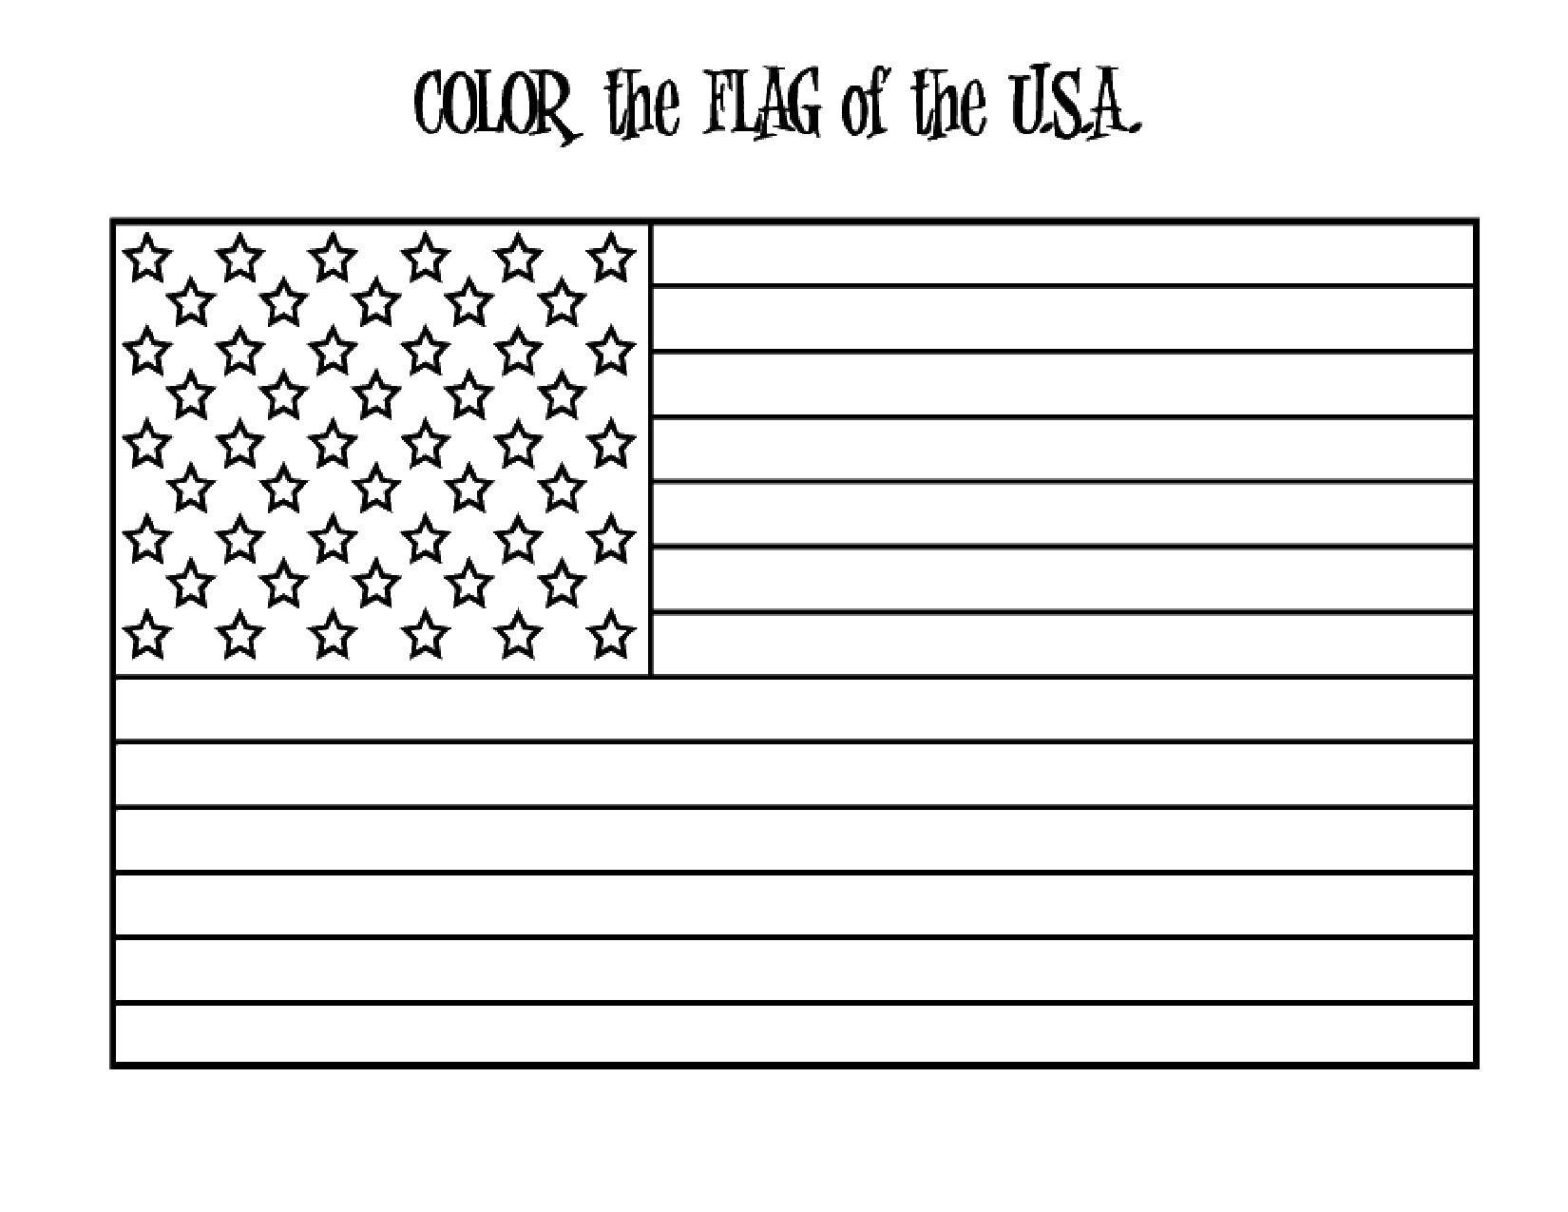 Раскраска флага США - лучший способ развлечься и научиться (флаг, США, Америка, сказки)